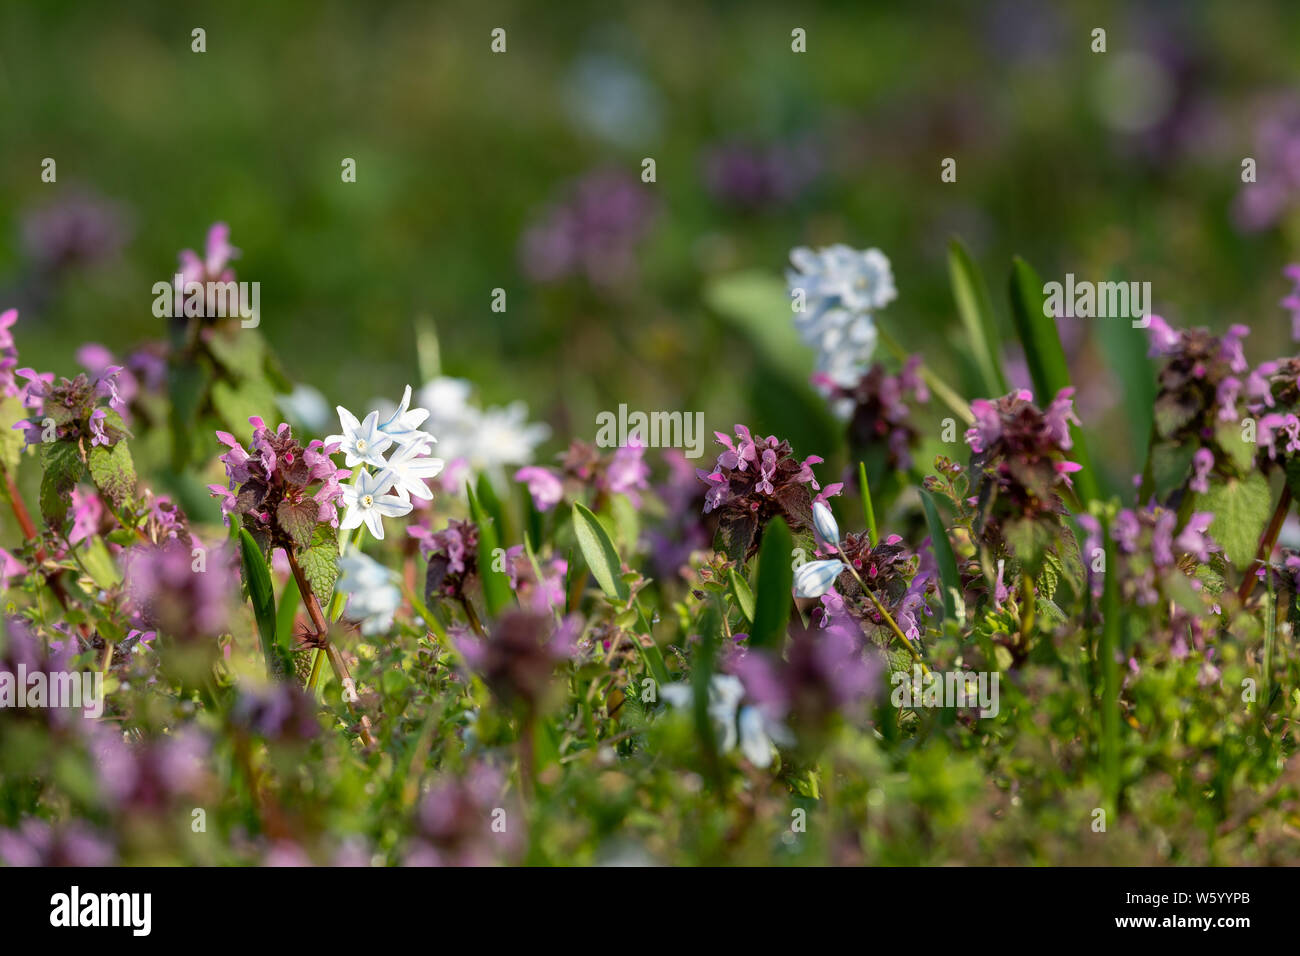 Closeup of various spring flowers (Lamium purpureum and Chionodoxa luciliae) in a garden Stock Photo